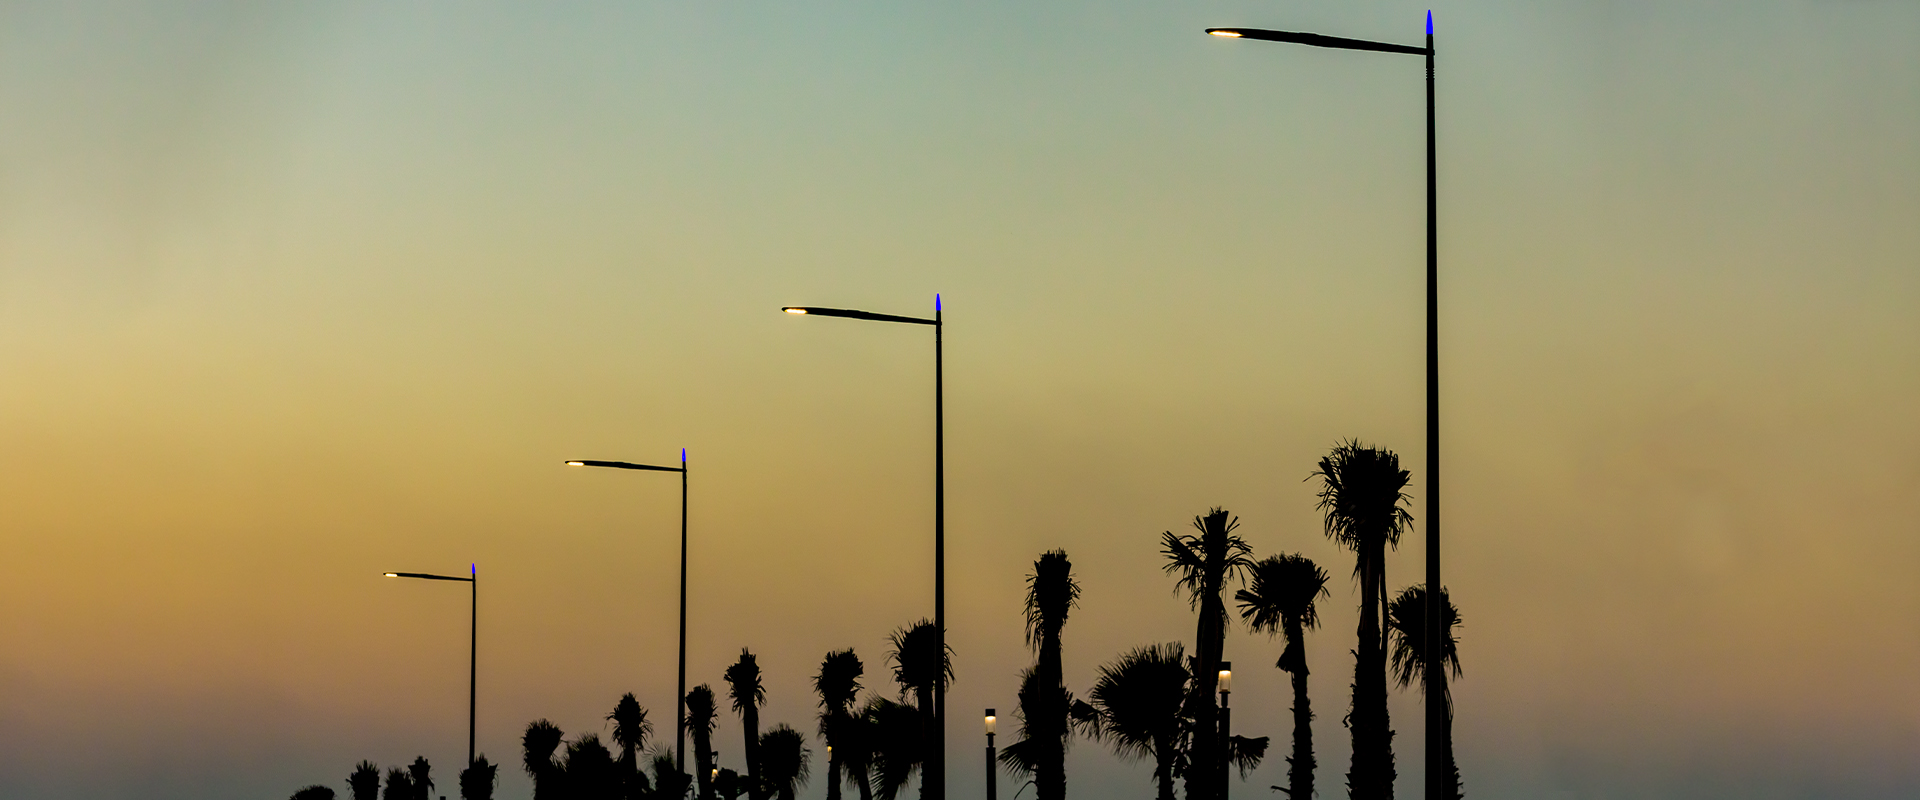 Casablanca street lighting